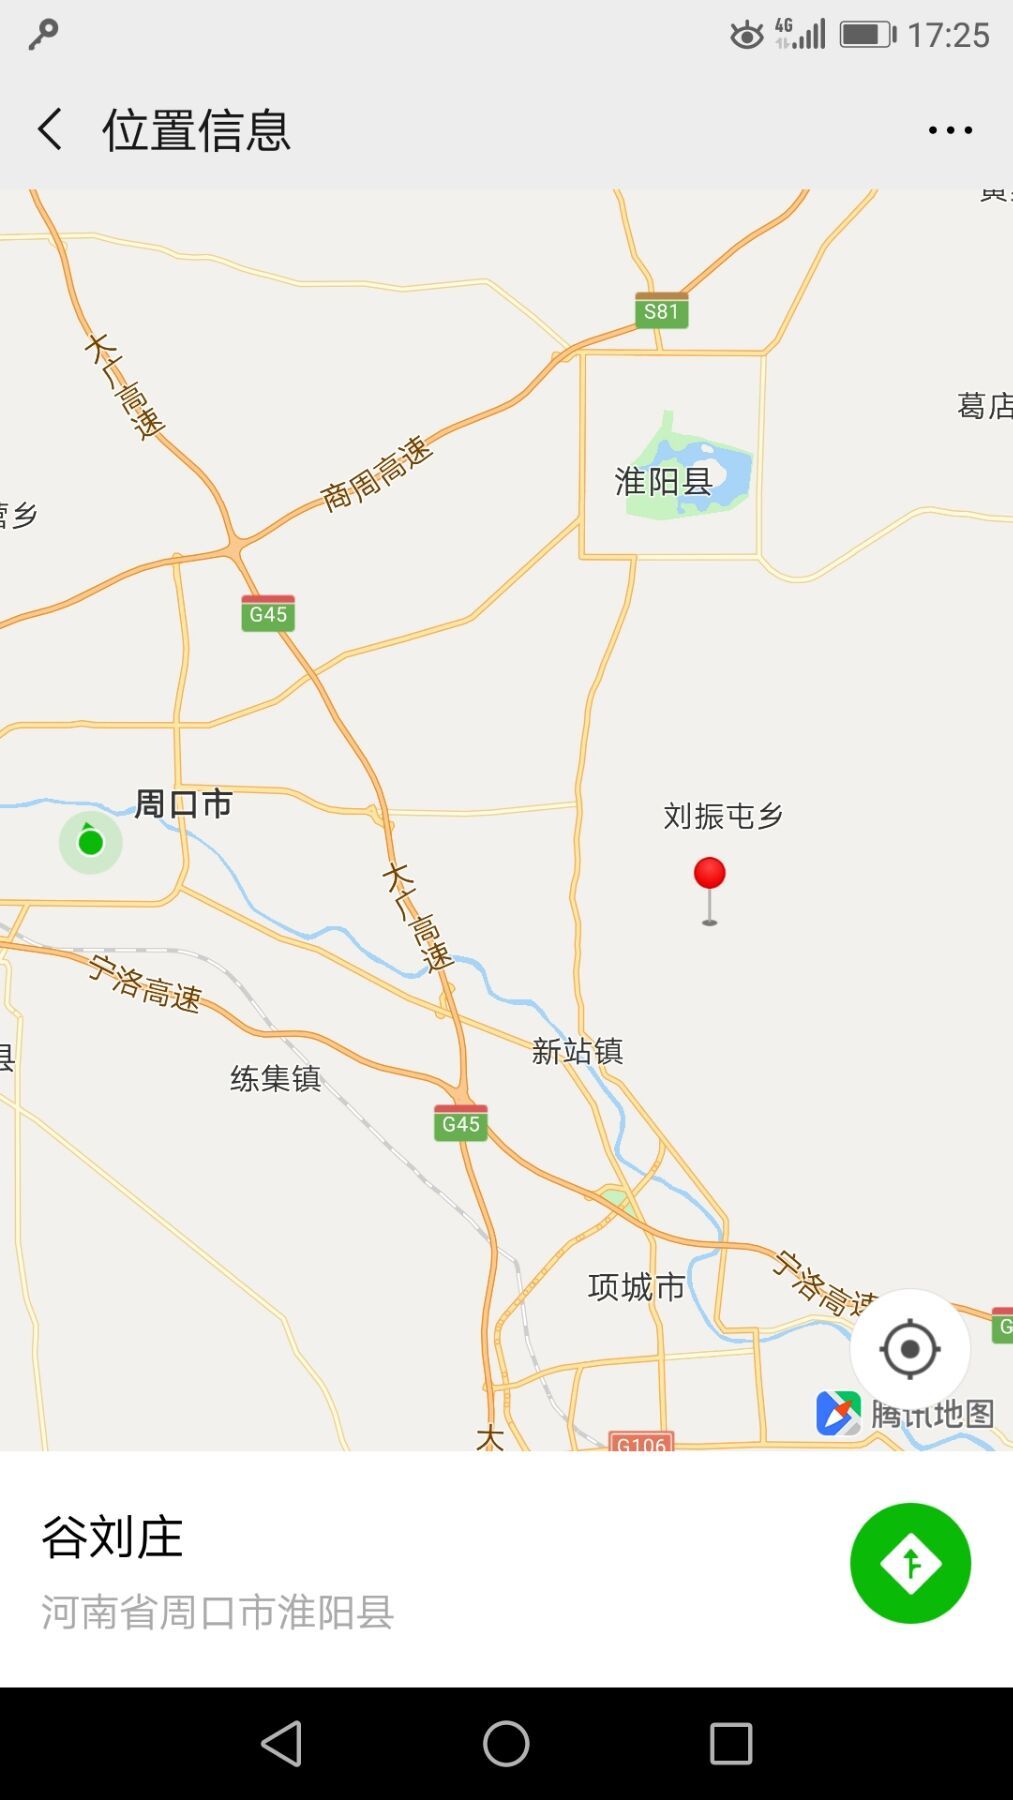 周口民用机场选址正式公布:位于淮阳县刘振屯乡